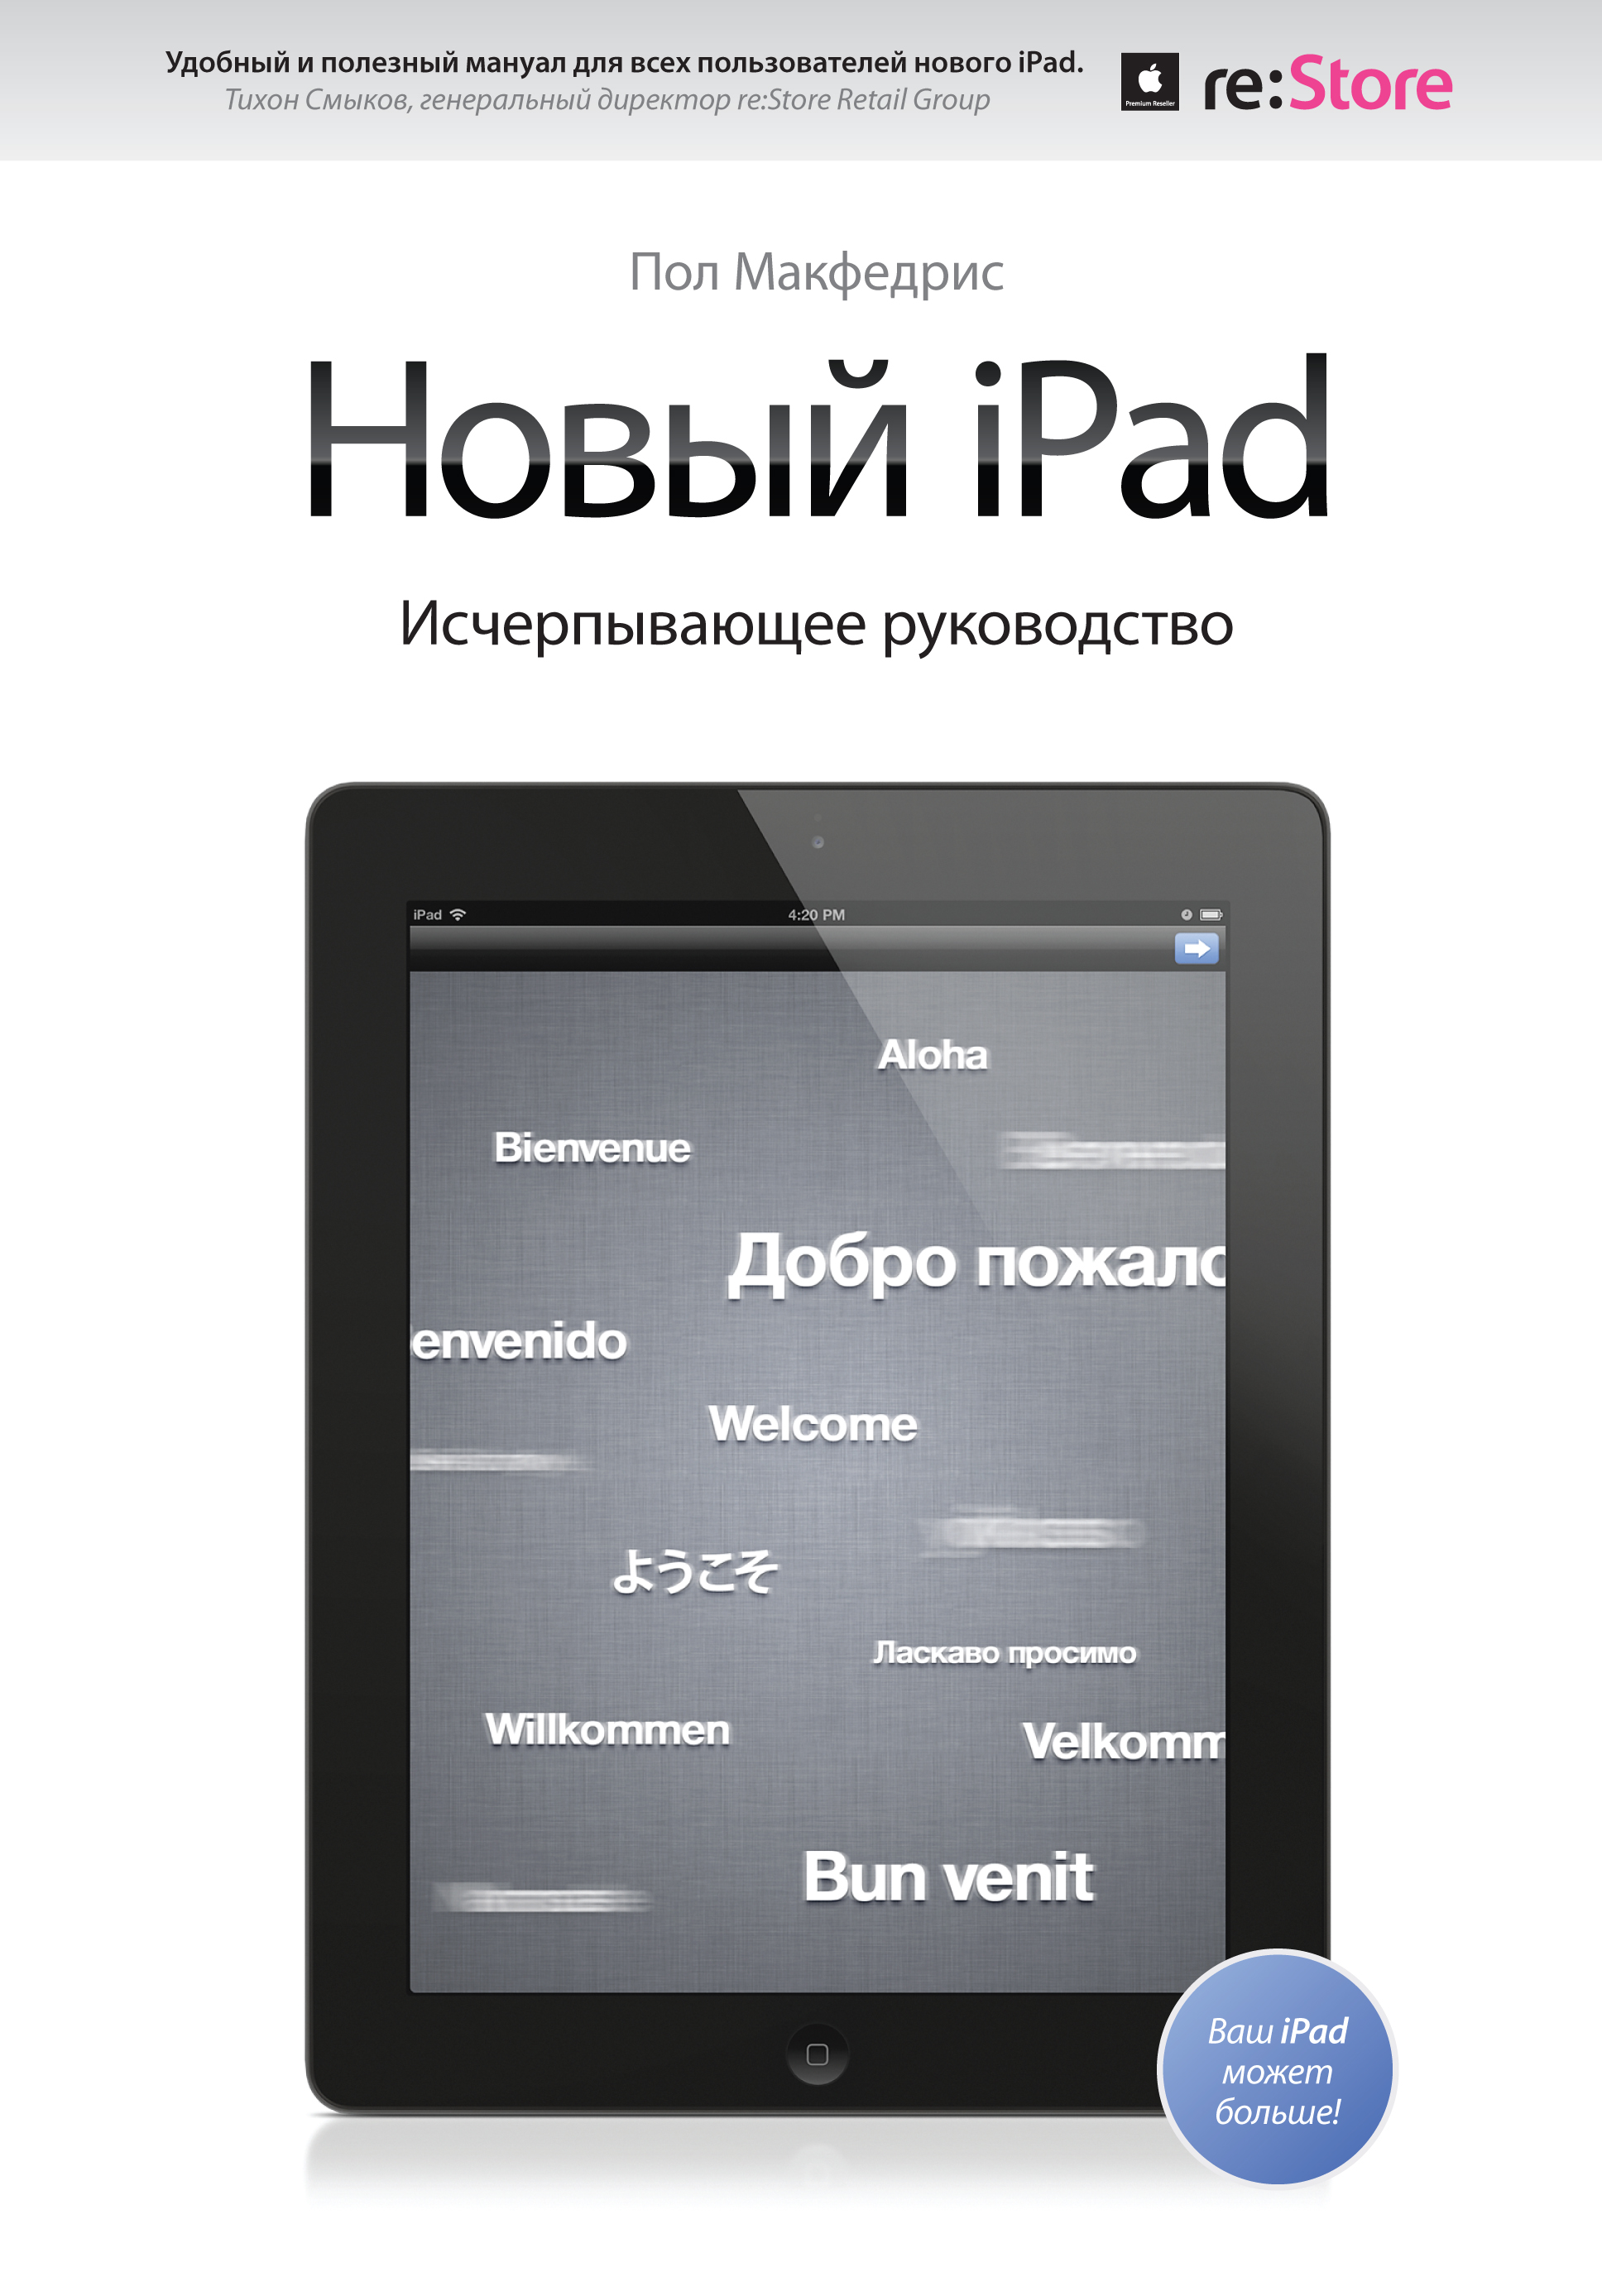 МакФедрис Пол Новый iPad. Исчерпывающее руководство цена и фото